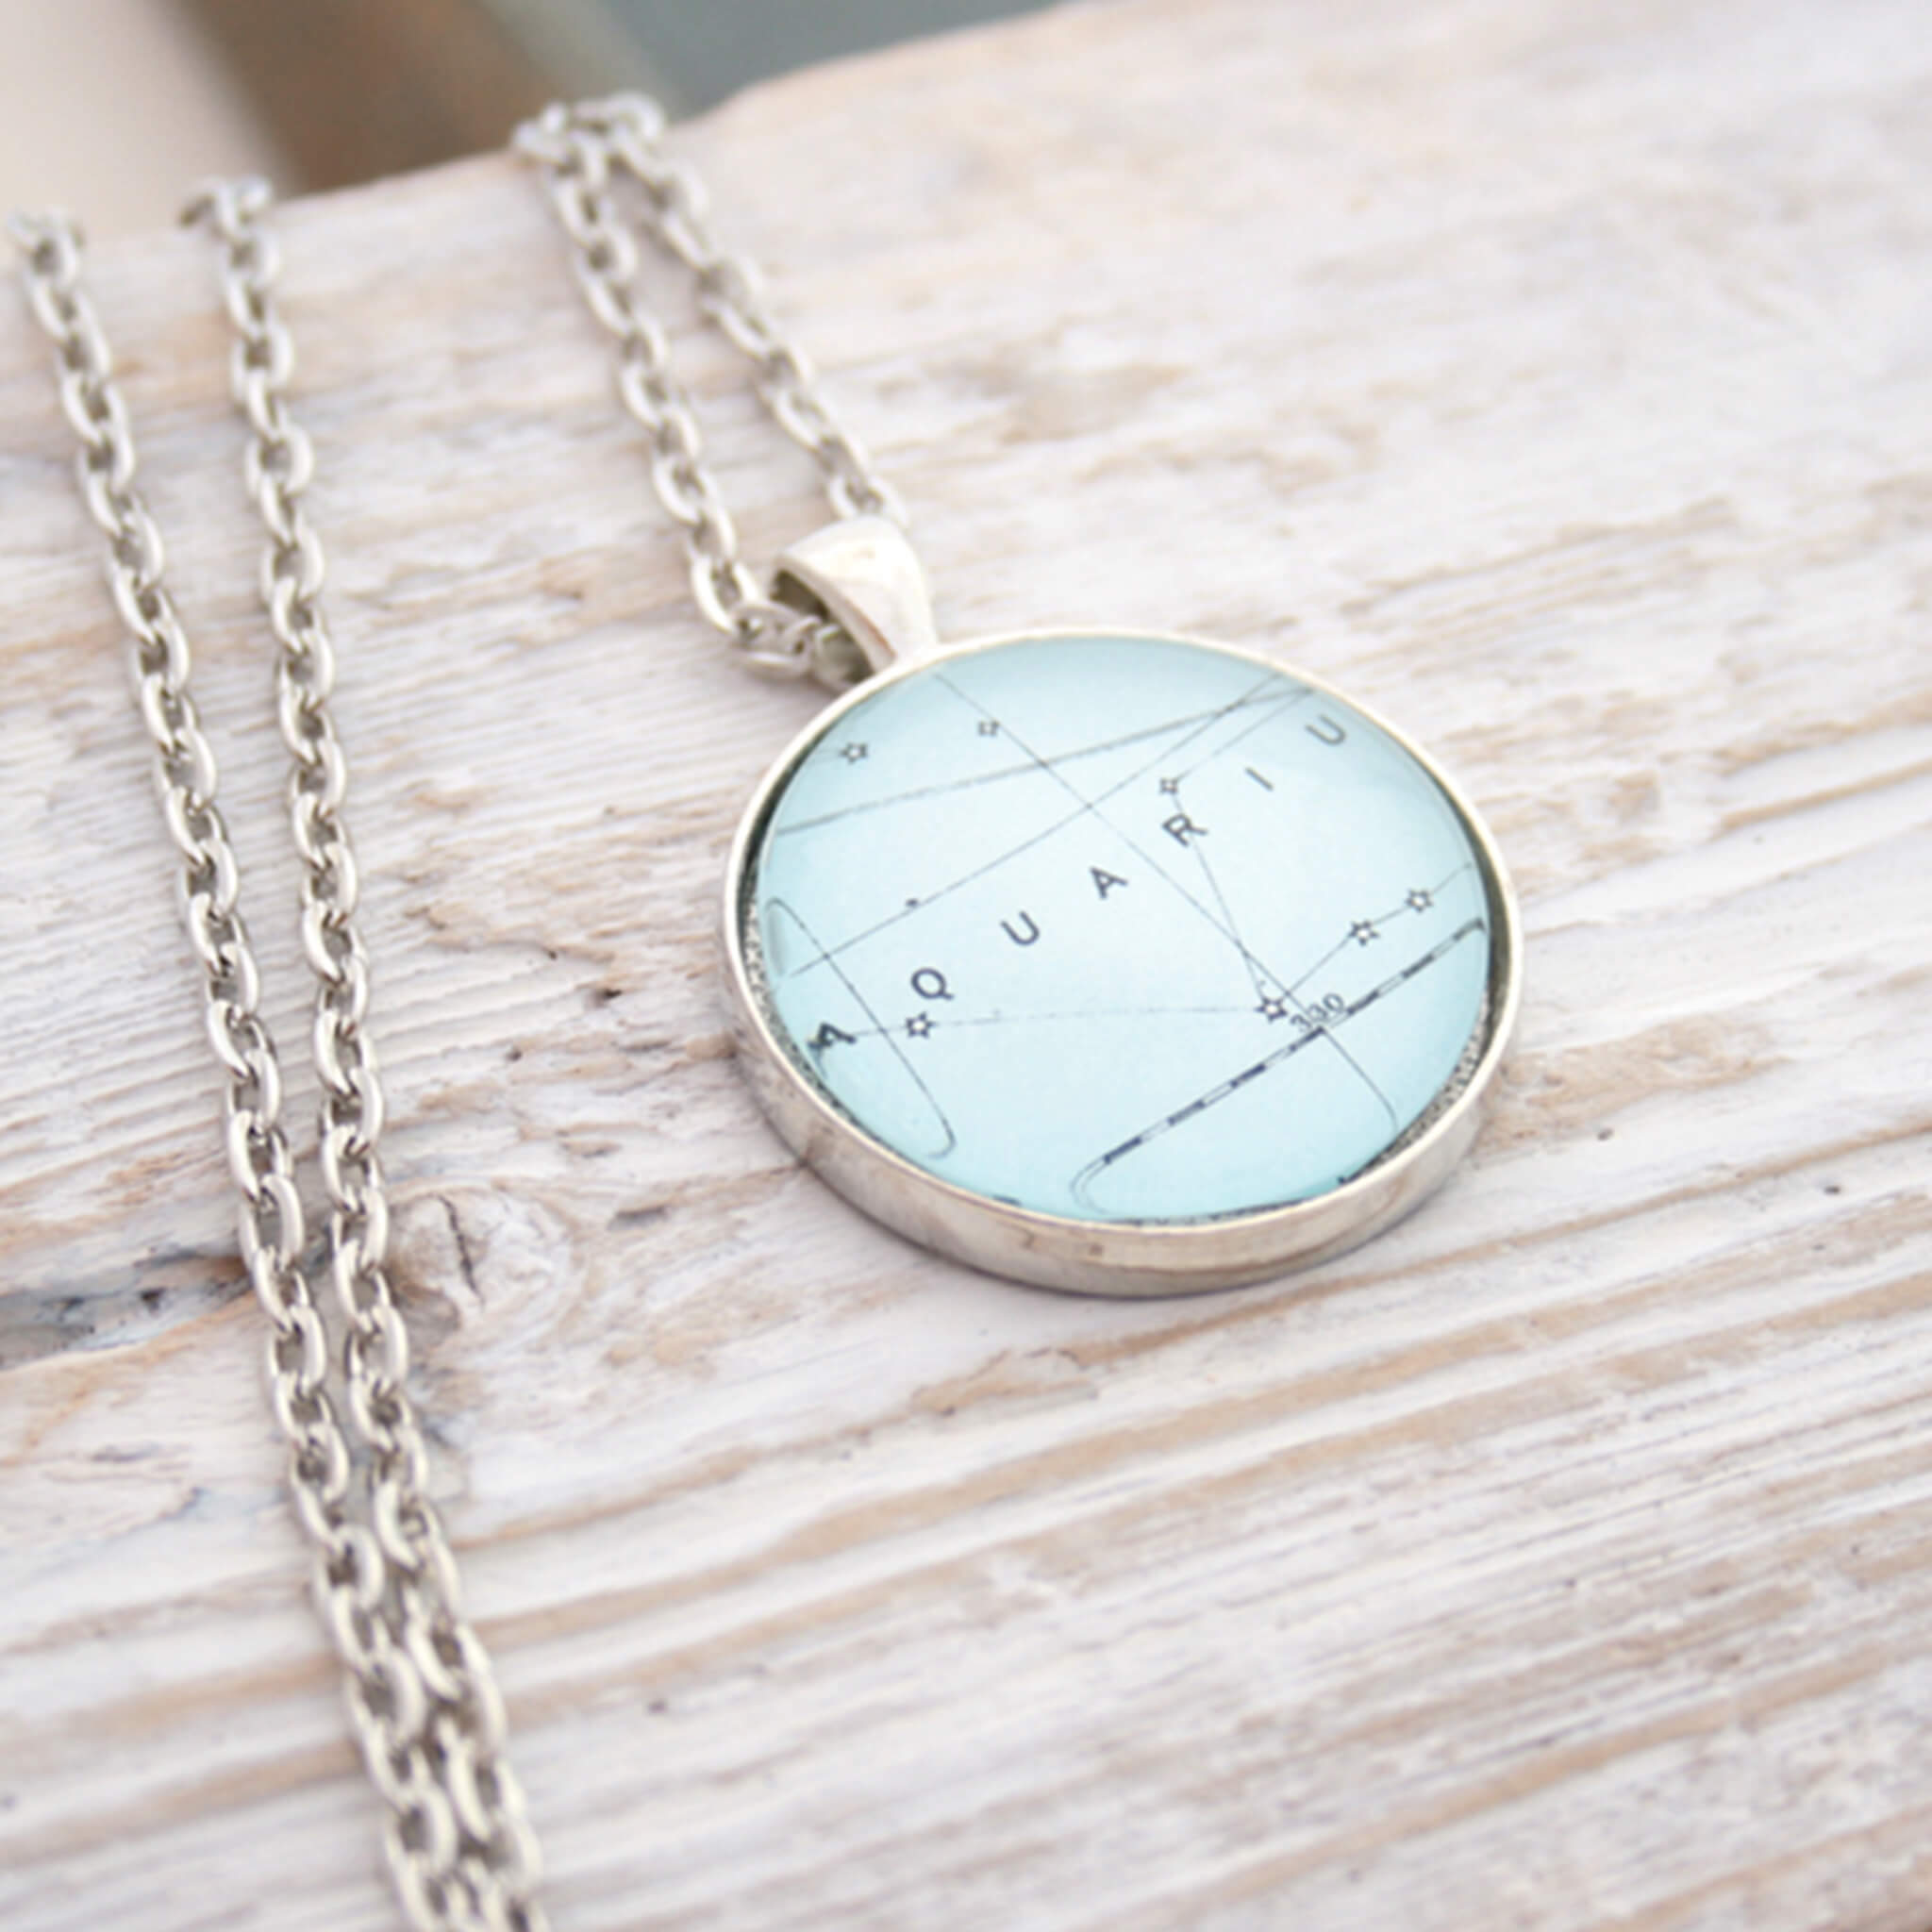 Silver tone pendant necklace featuring map of Aquarius constellation